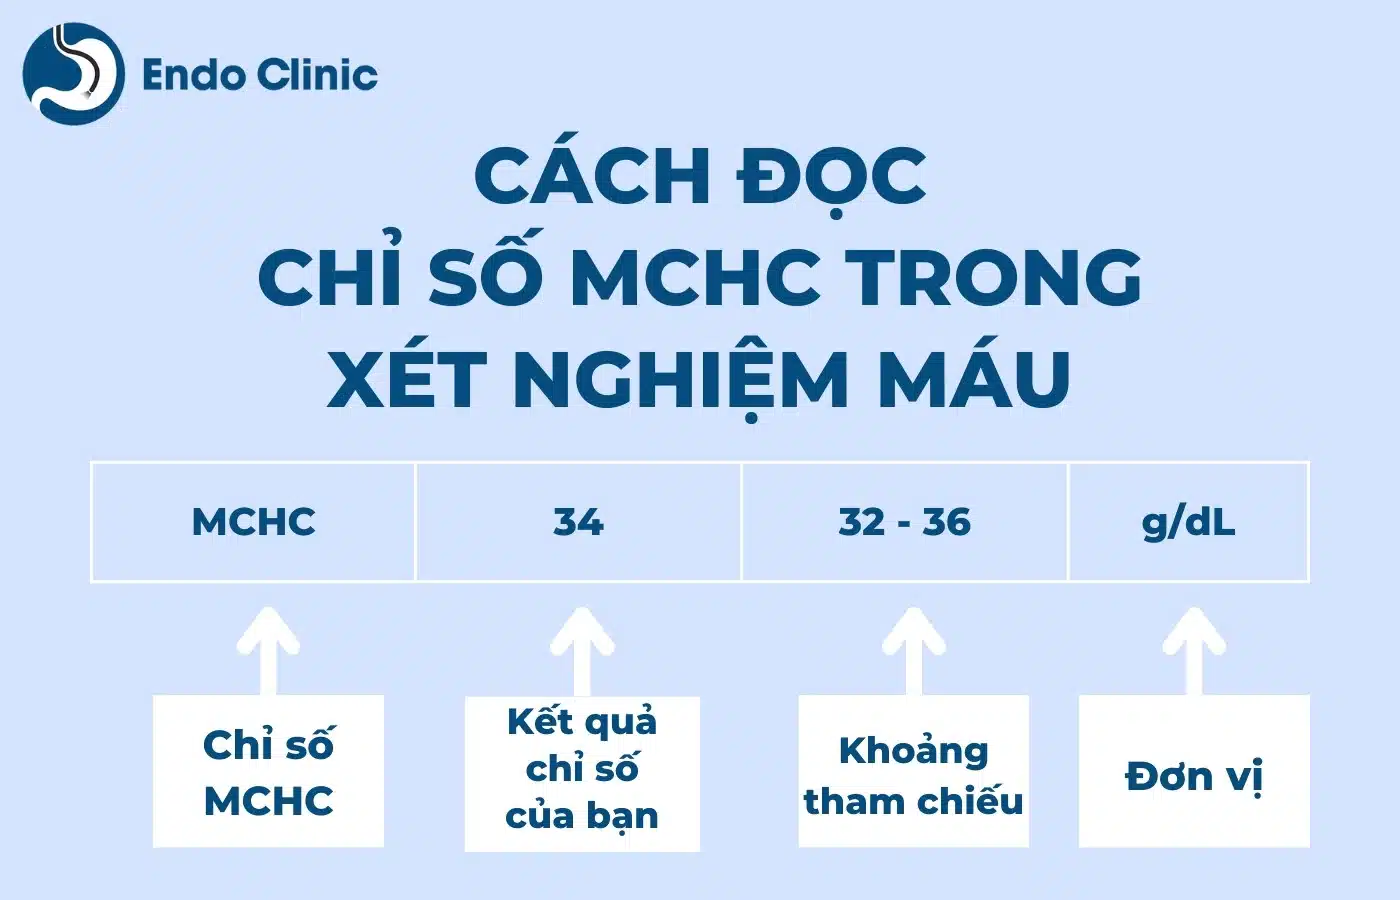 Cách đọc chỉ số MCHC trong xét nghiệm công thức máu như thế nào?